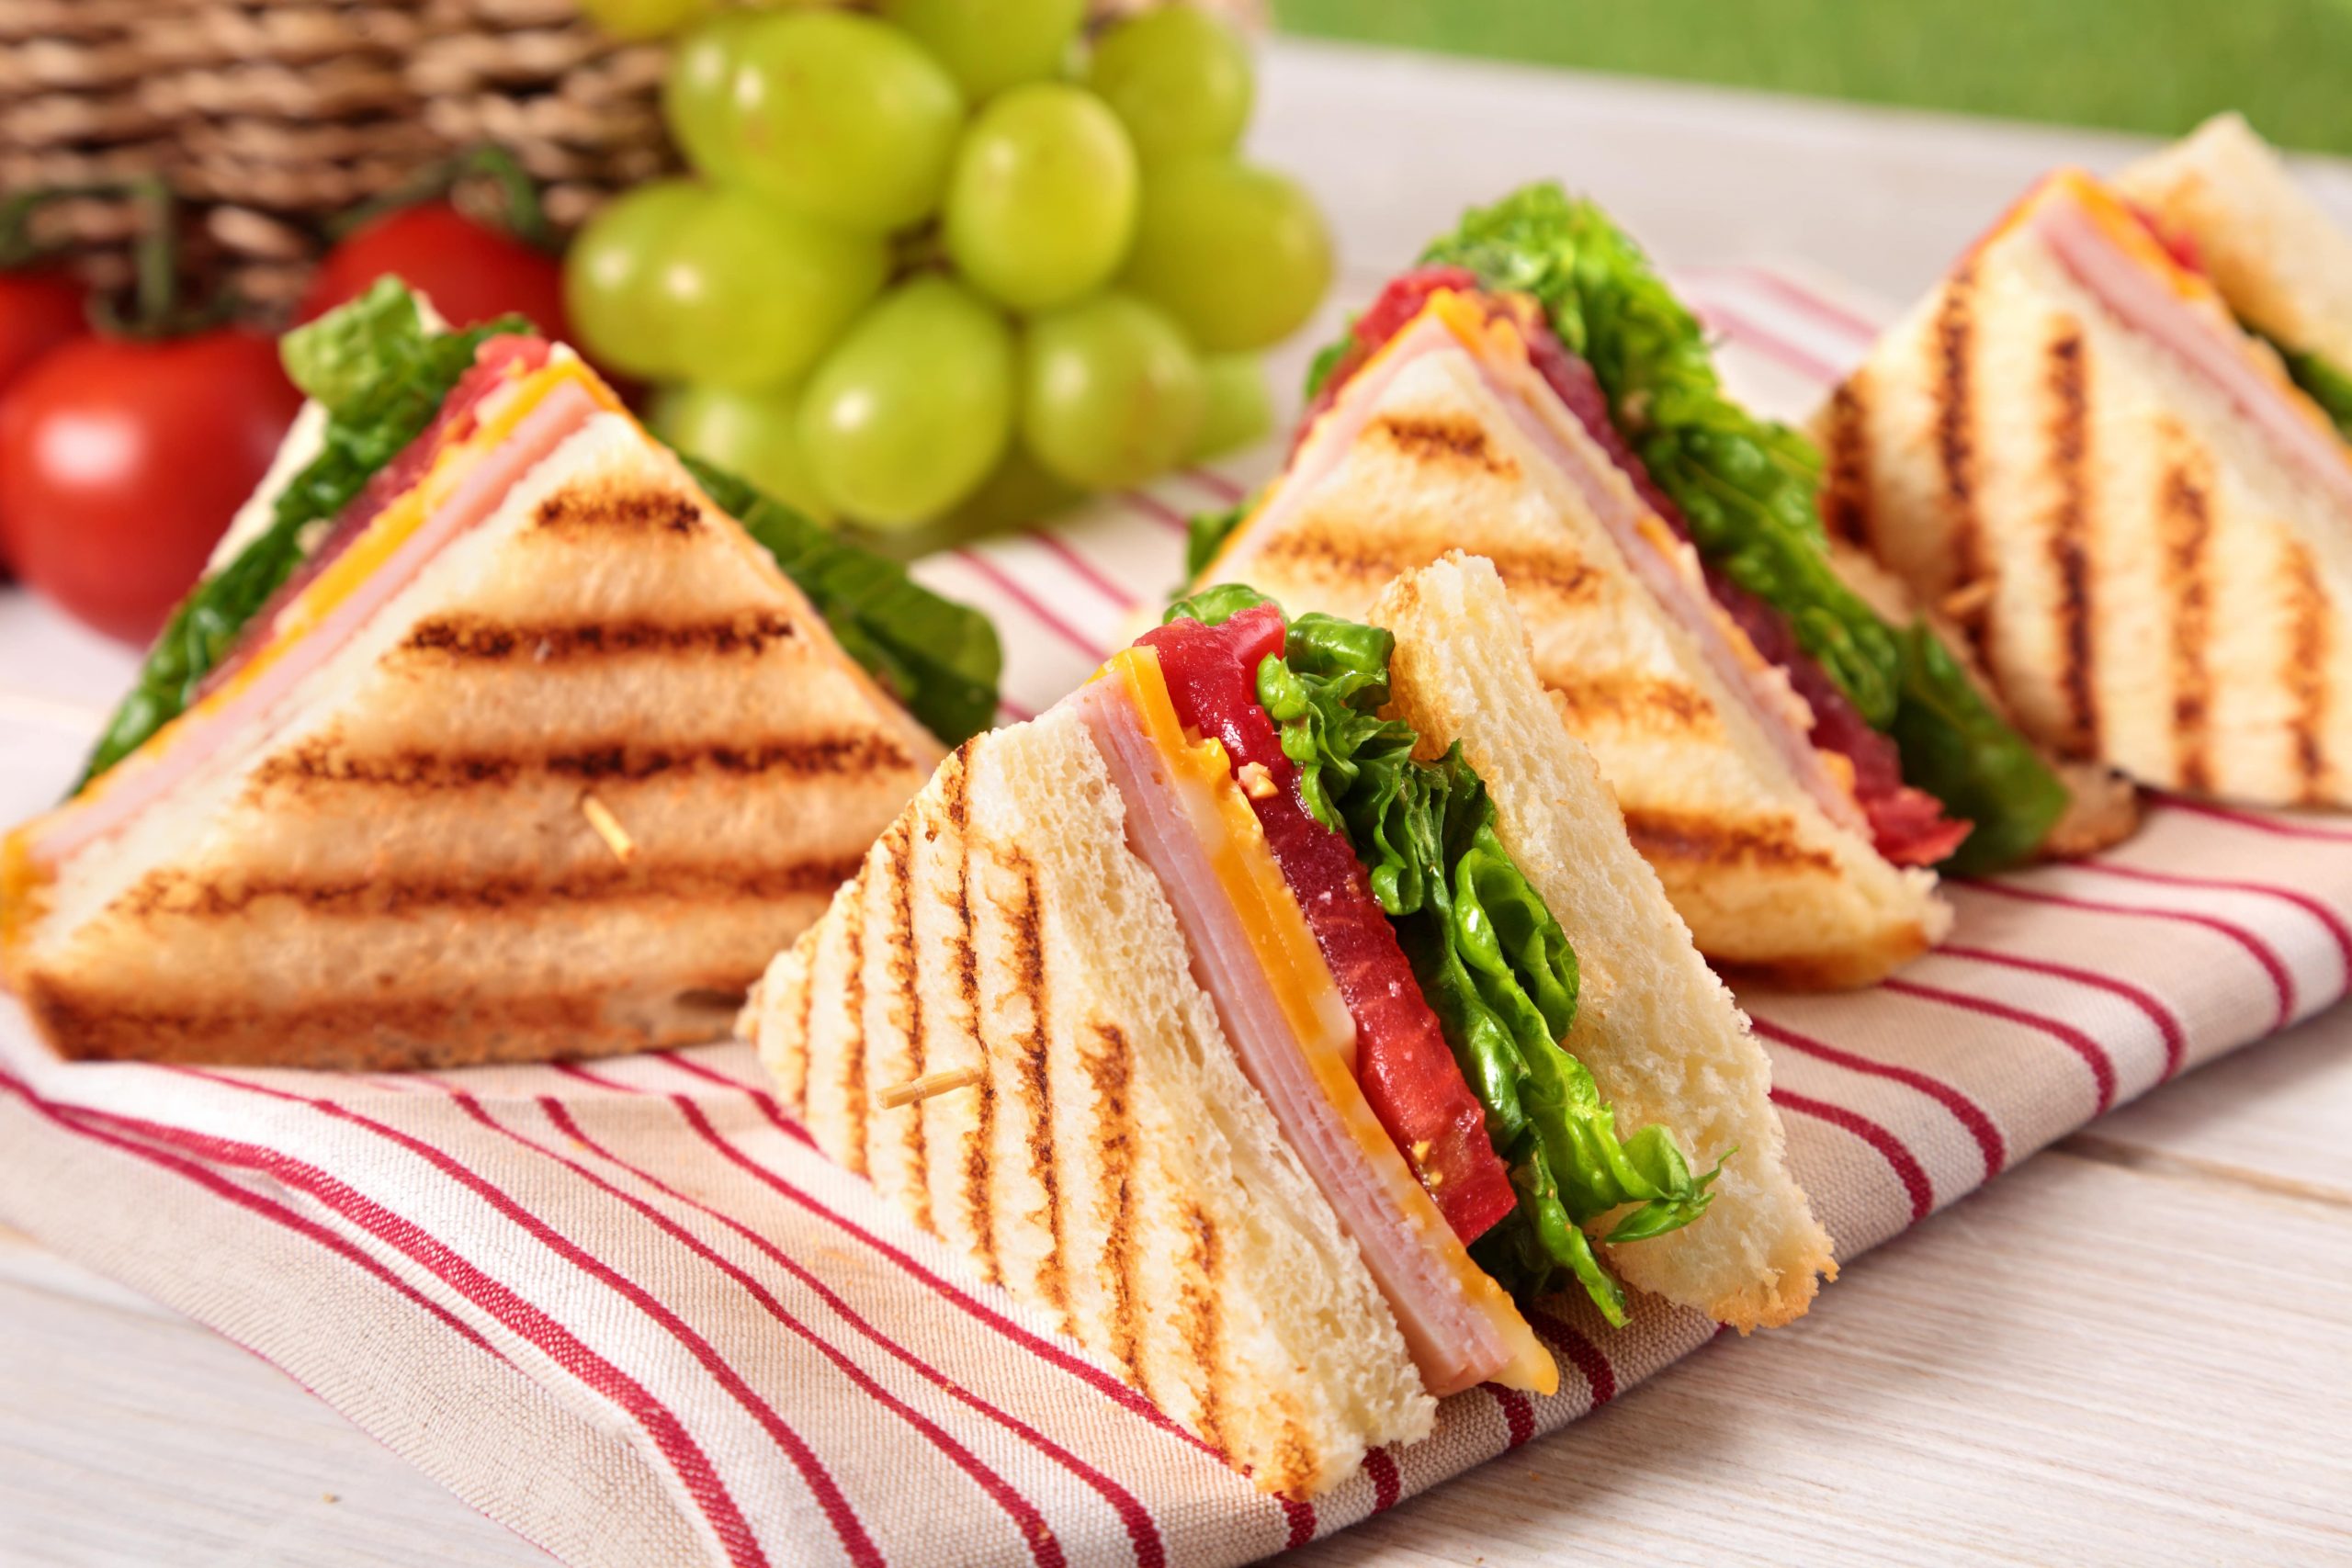 Mengenal Sandwich Generation dan Cara Memutus Mata Rantainya